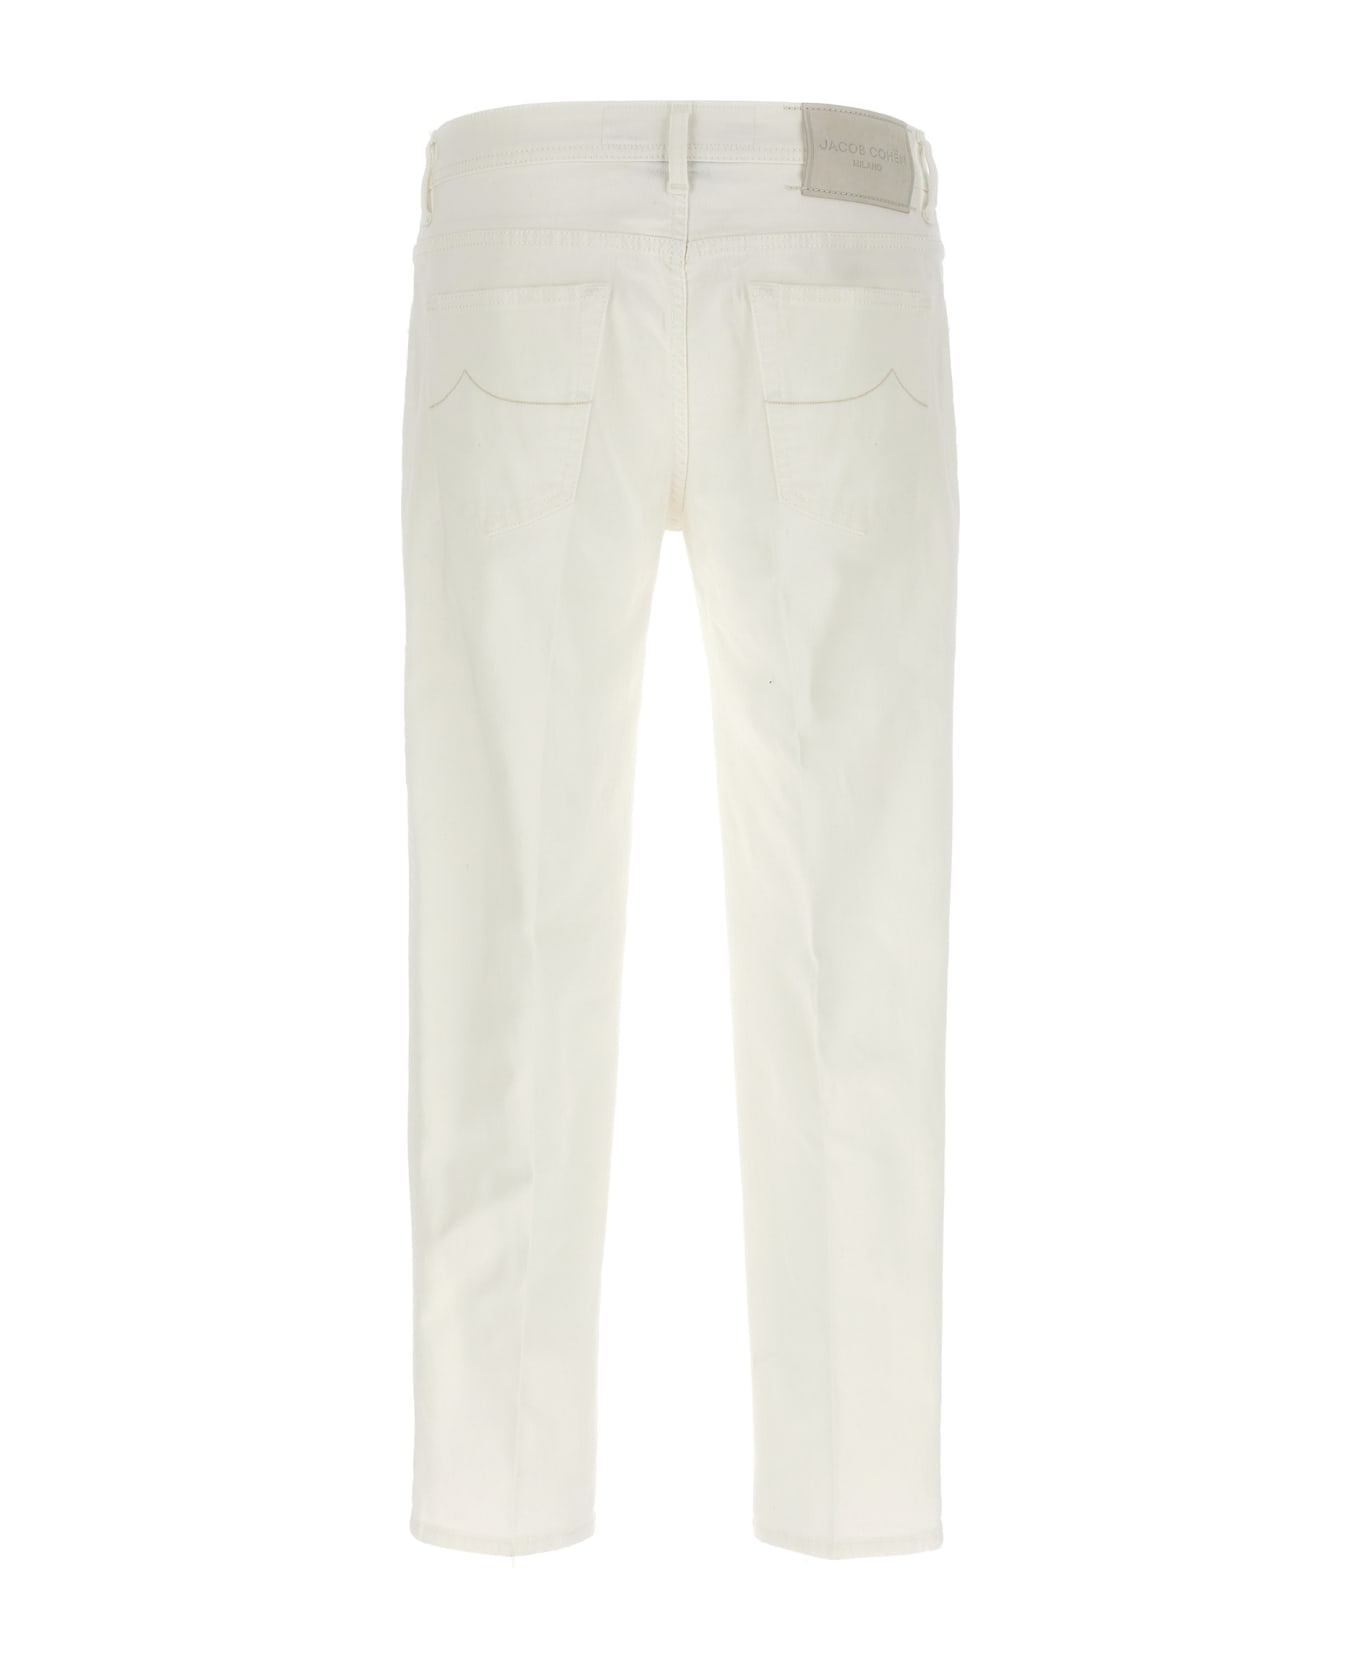 Jacob Cohen 'scott' Jeans - White ボトムス